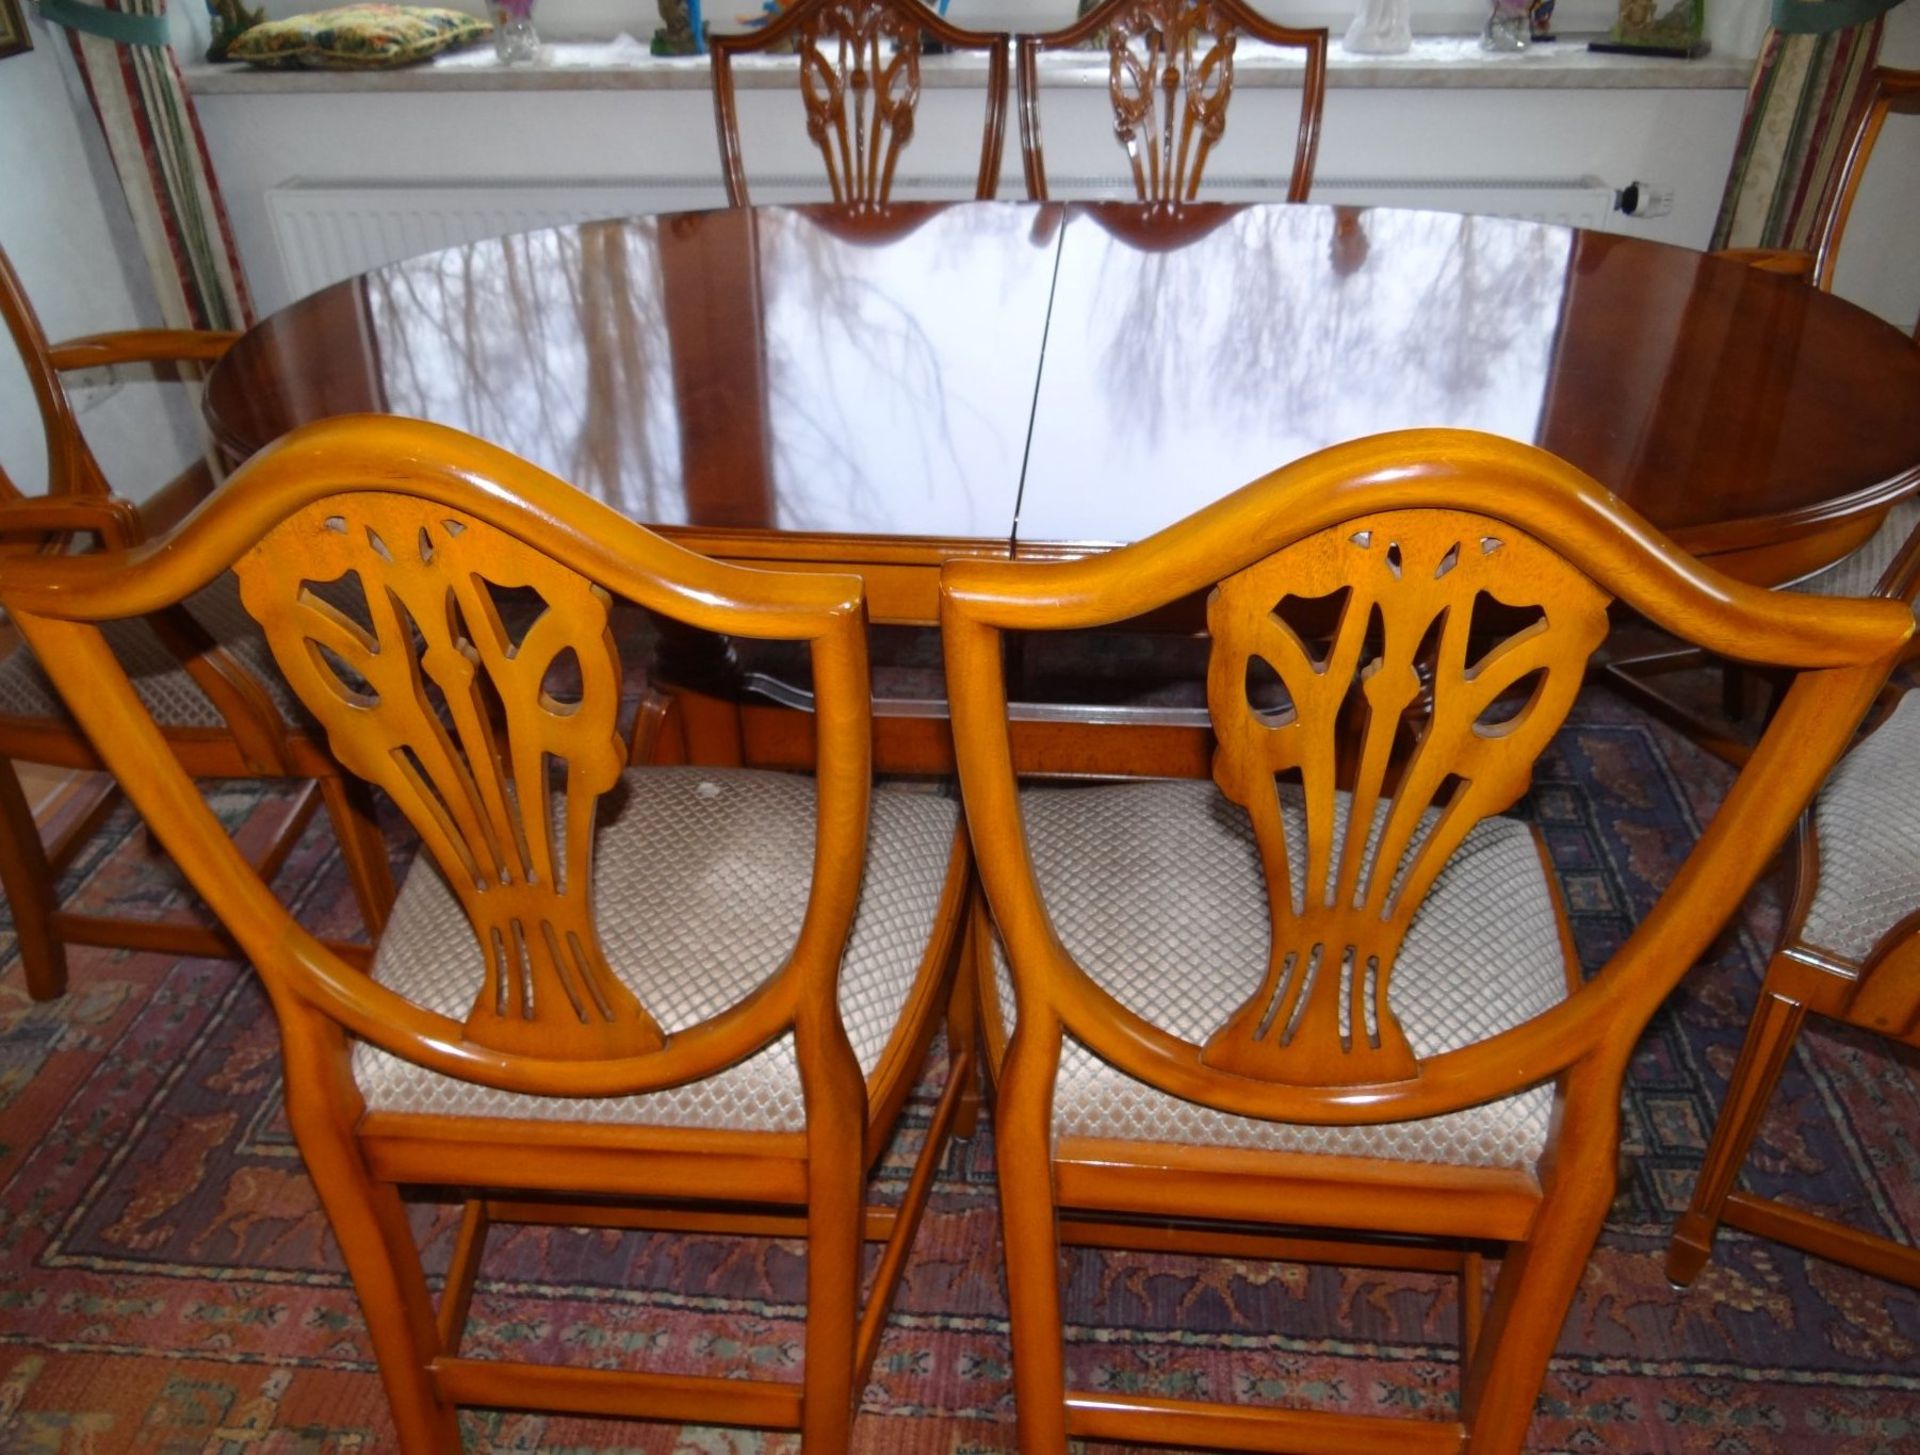 Esstisch mit 7 Stühlen im Sheraton-Stil, Kirsche, 3 Armlehnstühle, 4 Stühle, Tisch ausziehbar, - Bild 4 aus 8